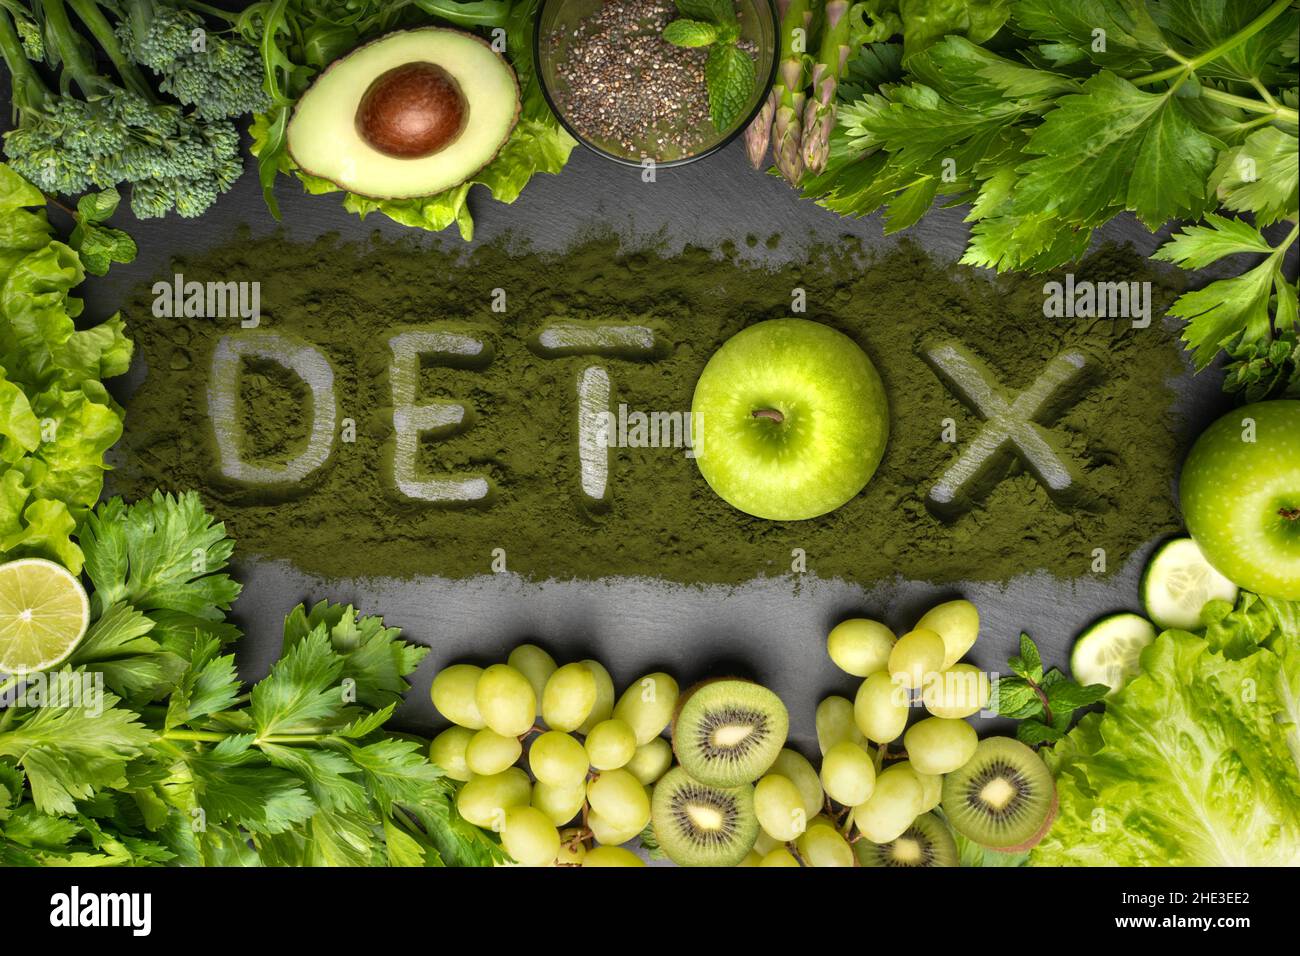 Disintossicare la dieta, mangiare sano e pulito. Vista dall'alto di verdure fresche, frutta e clorella con testo disintossicante Foto Stock